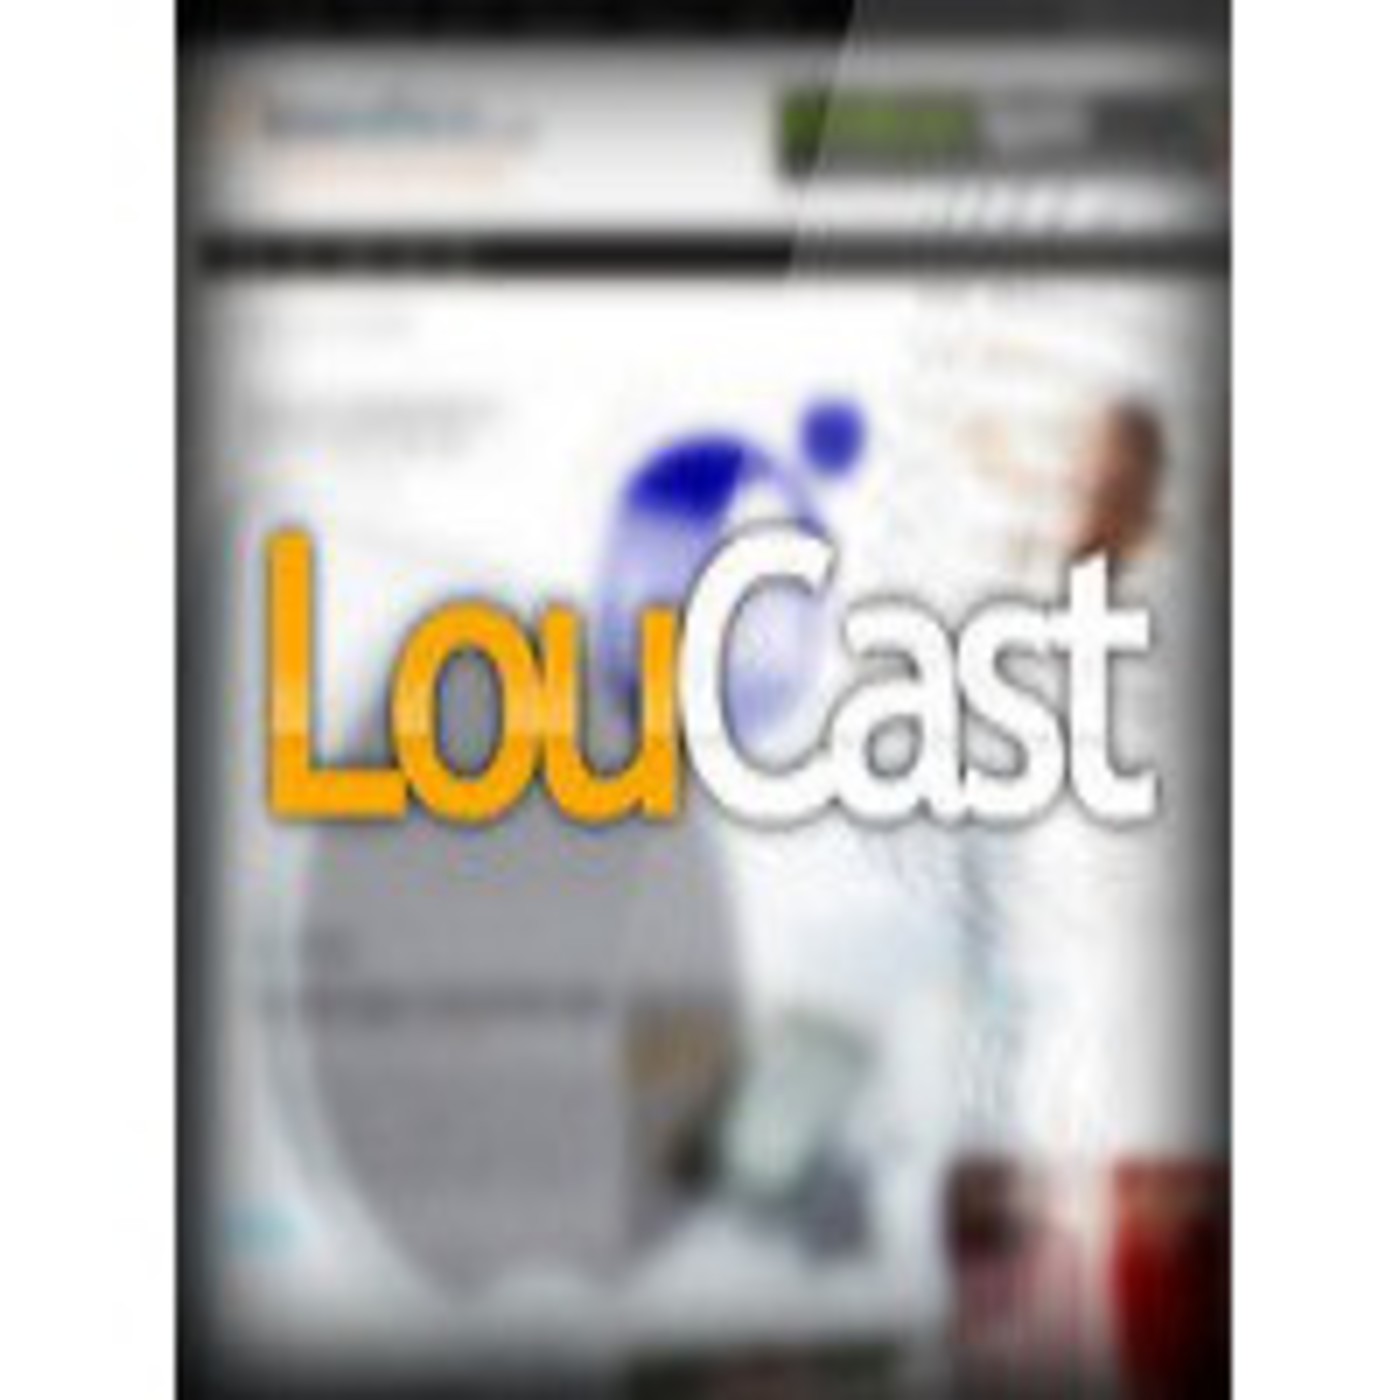 LouCast - Episodio 1 de la nueva temporada, con @jfulgen